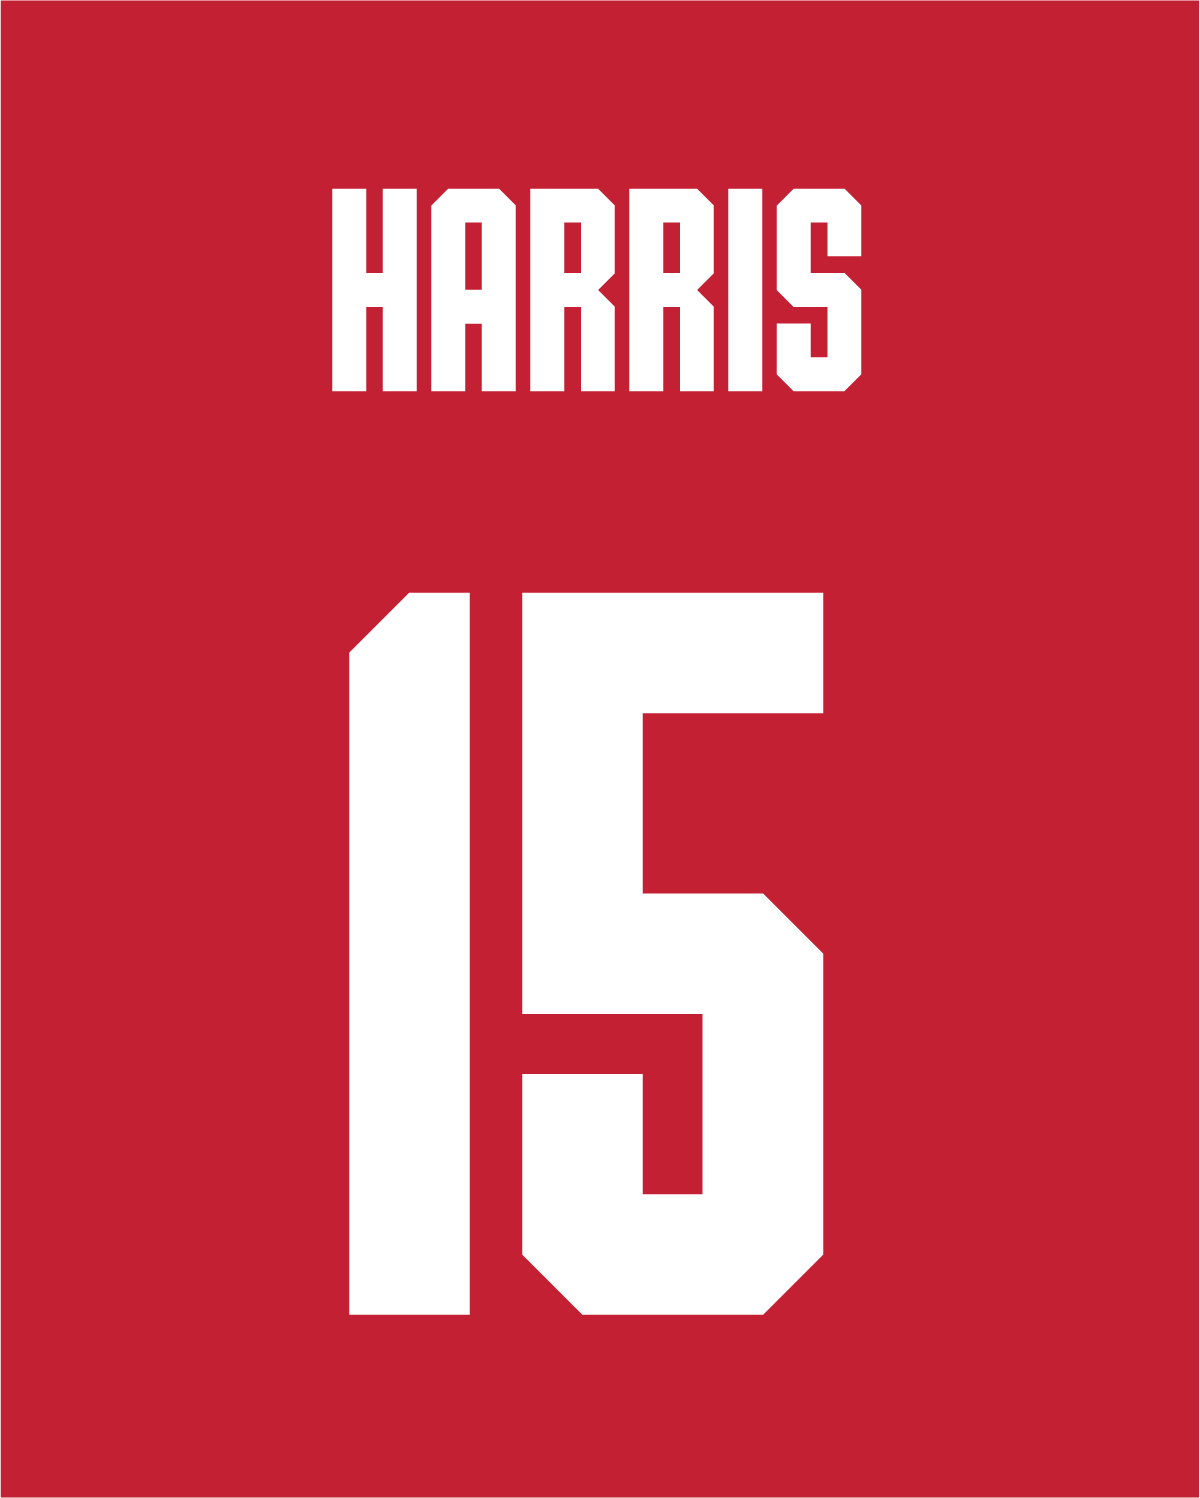 Hudson Harris | #15